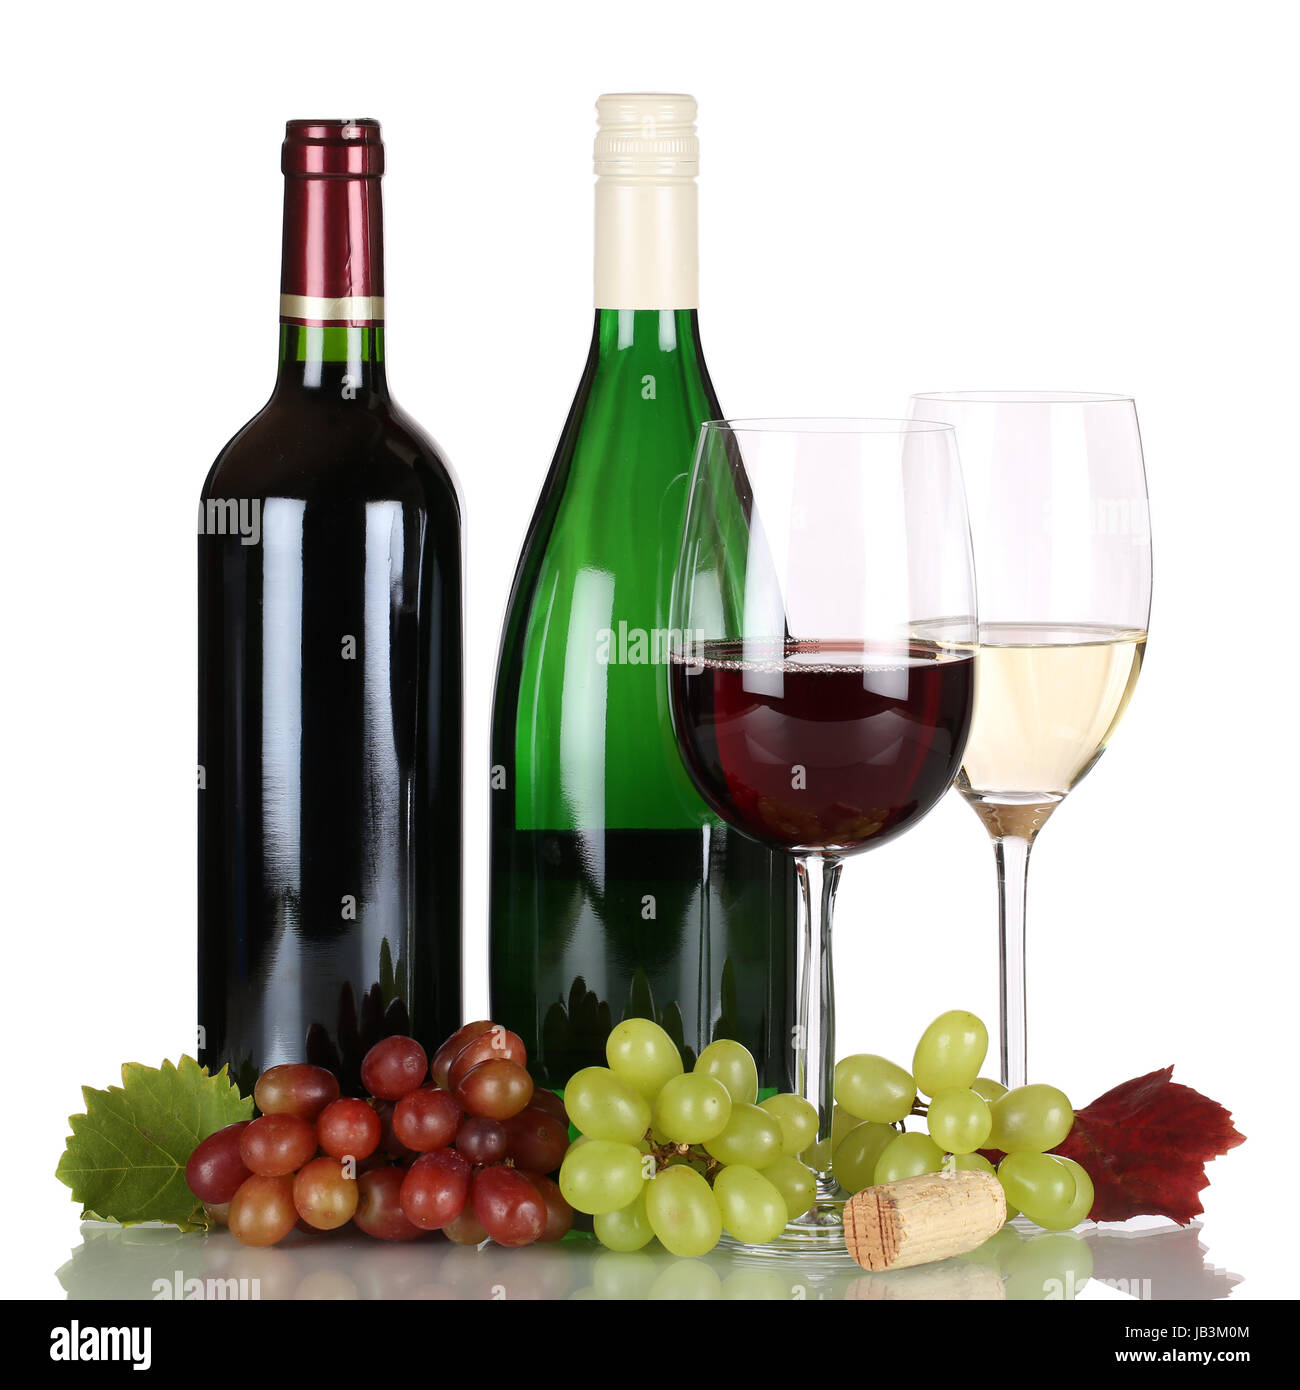 Rotwein und Weißwein in Weinflaschen, freigestellt vor einem weissen Hintergrund Stock Photo